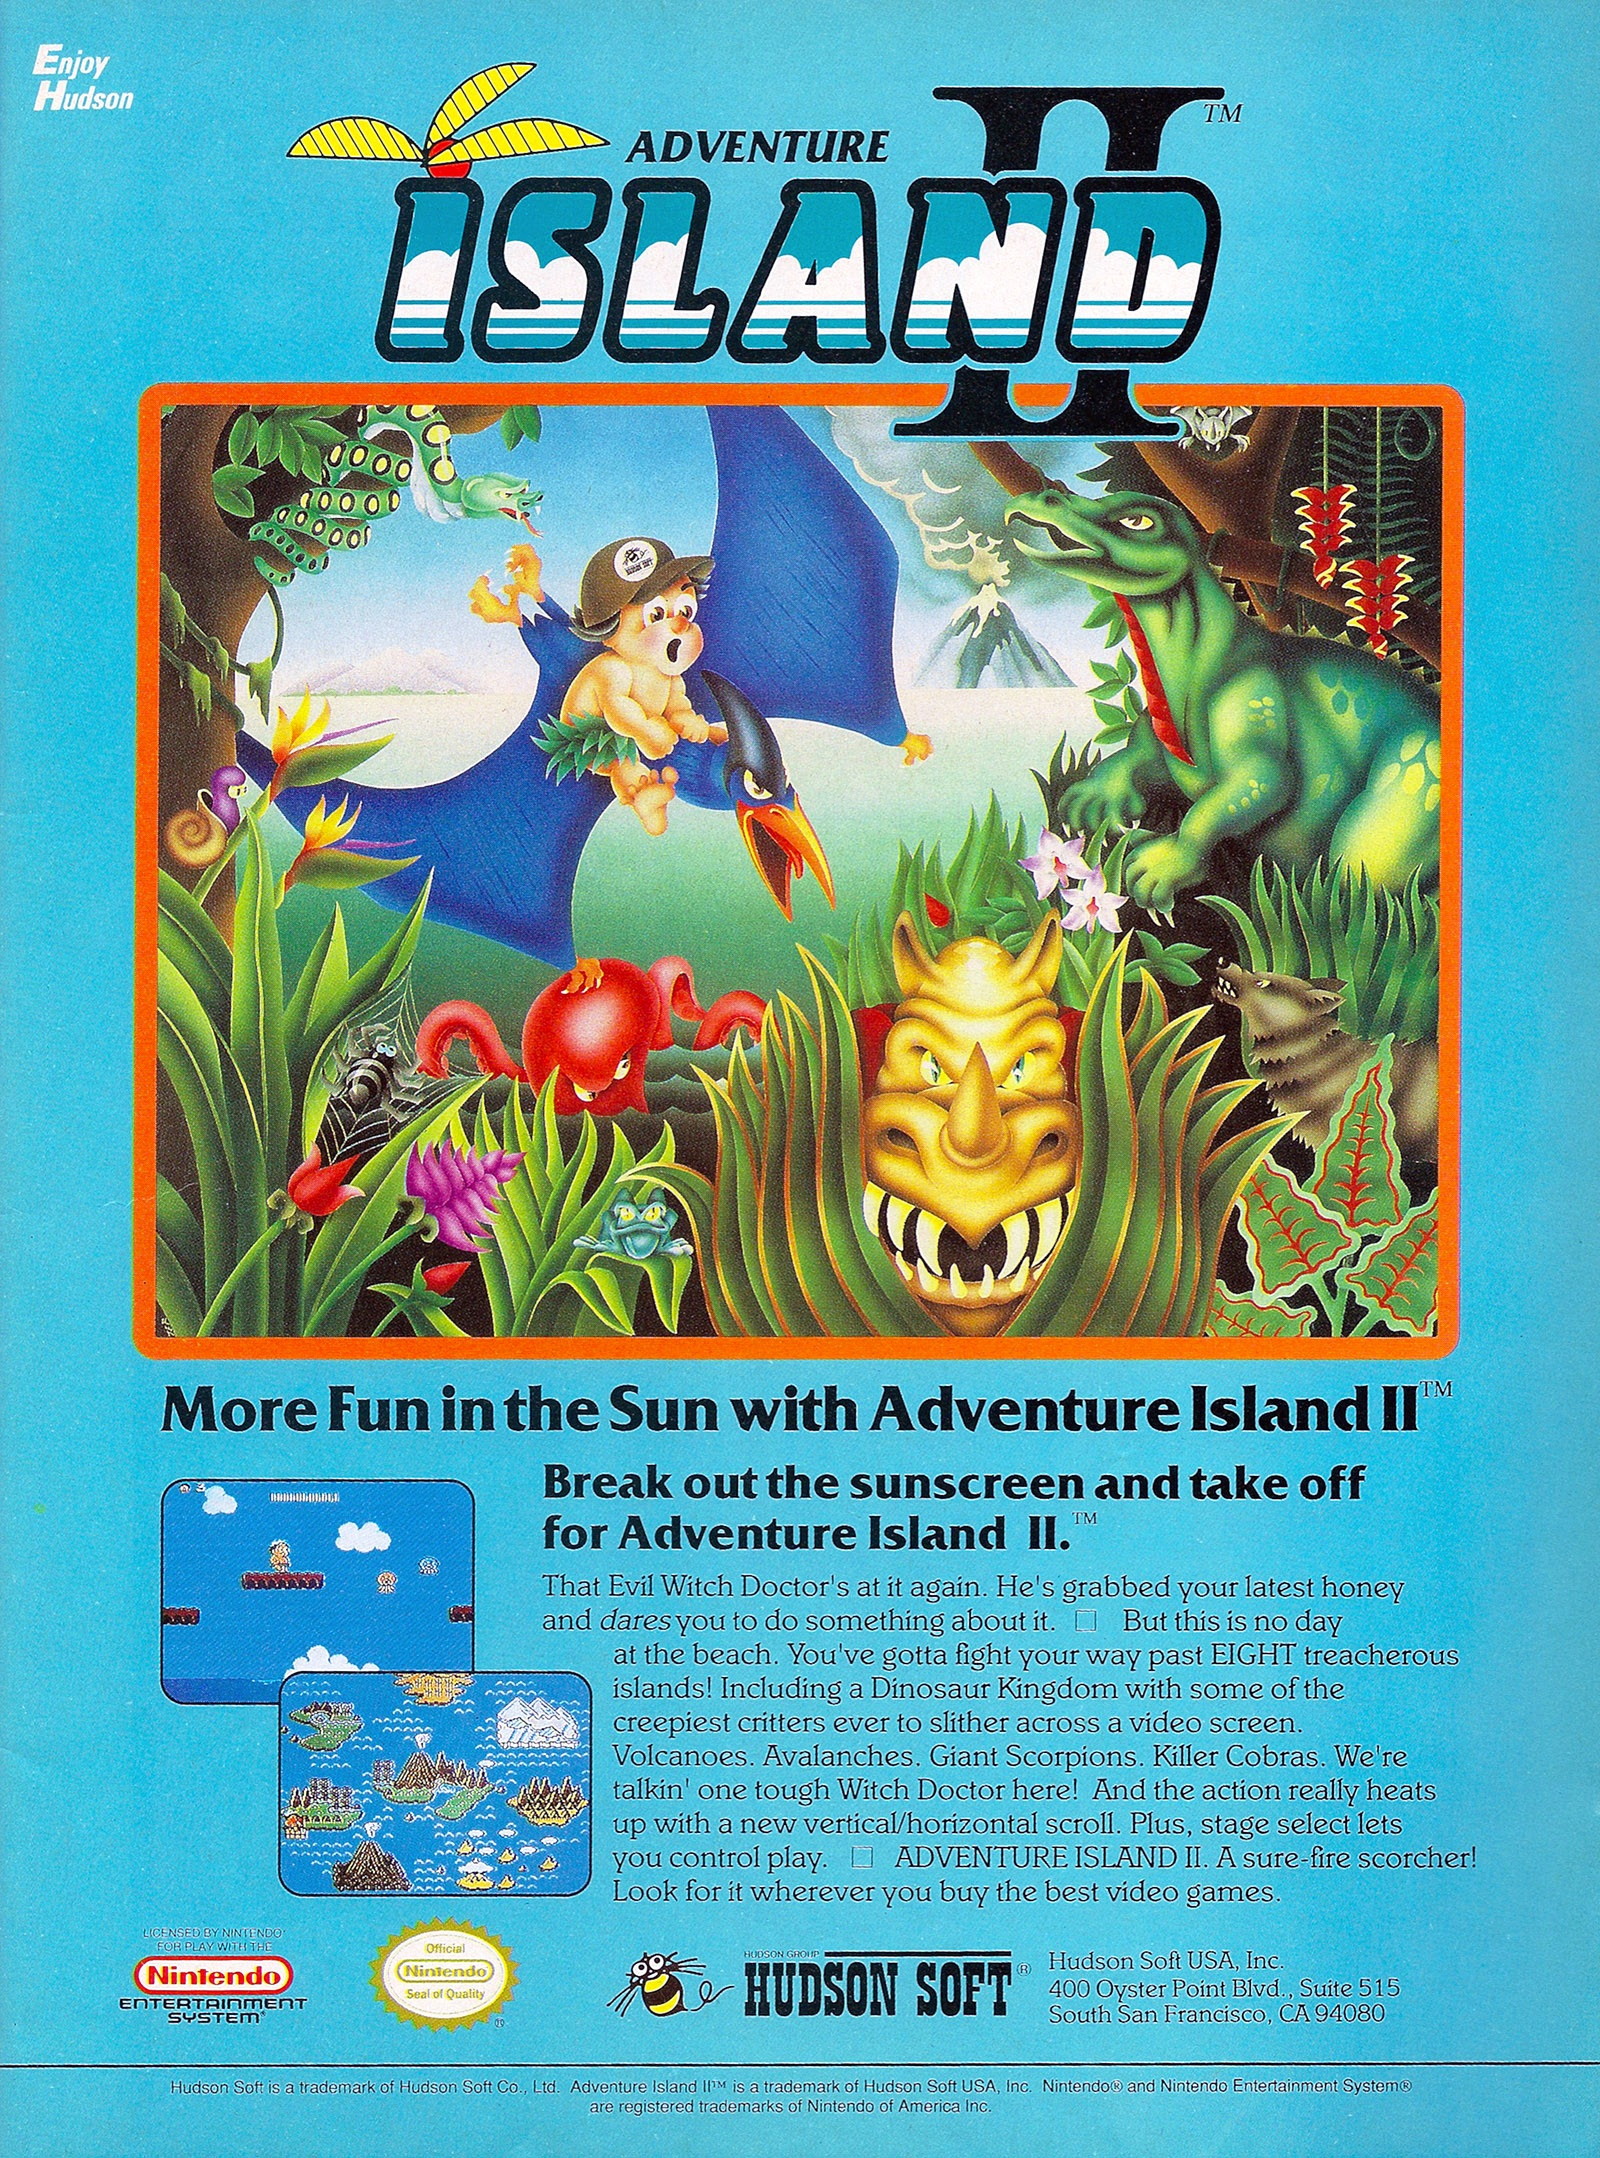 Adventure Island II Images - LaunchBox Games Database